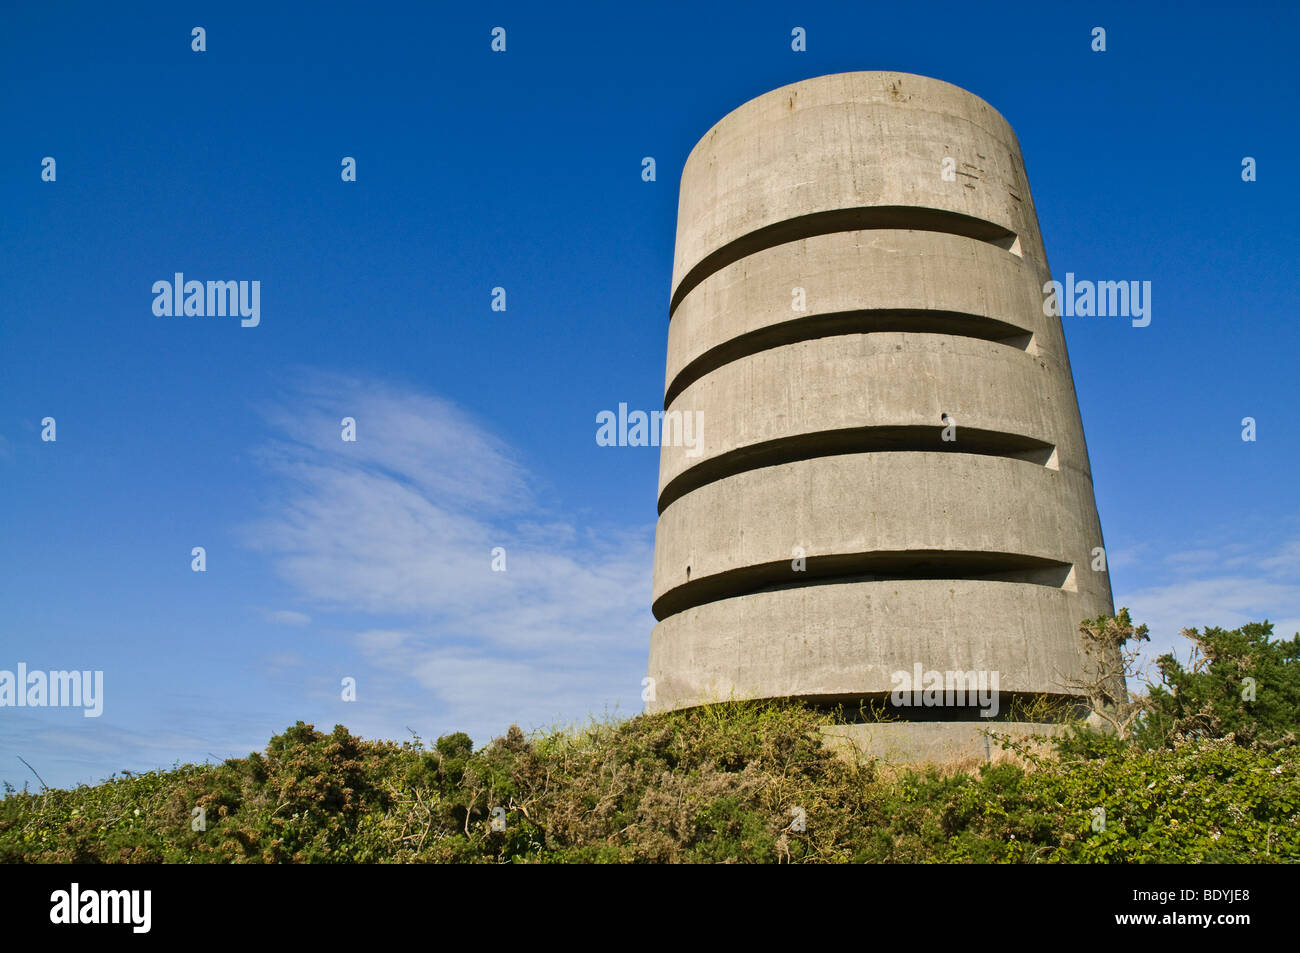 dh Pleinmont Tower nazi-Aussichtspunkt TORTEVAL GUERNSEY Deutscher Weltkrieg Zwei Betonbeobachtungstürme Kanal Inseln Festungsbefestigungen ii Stockfoto